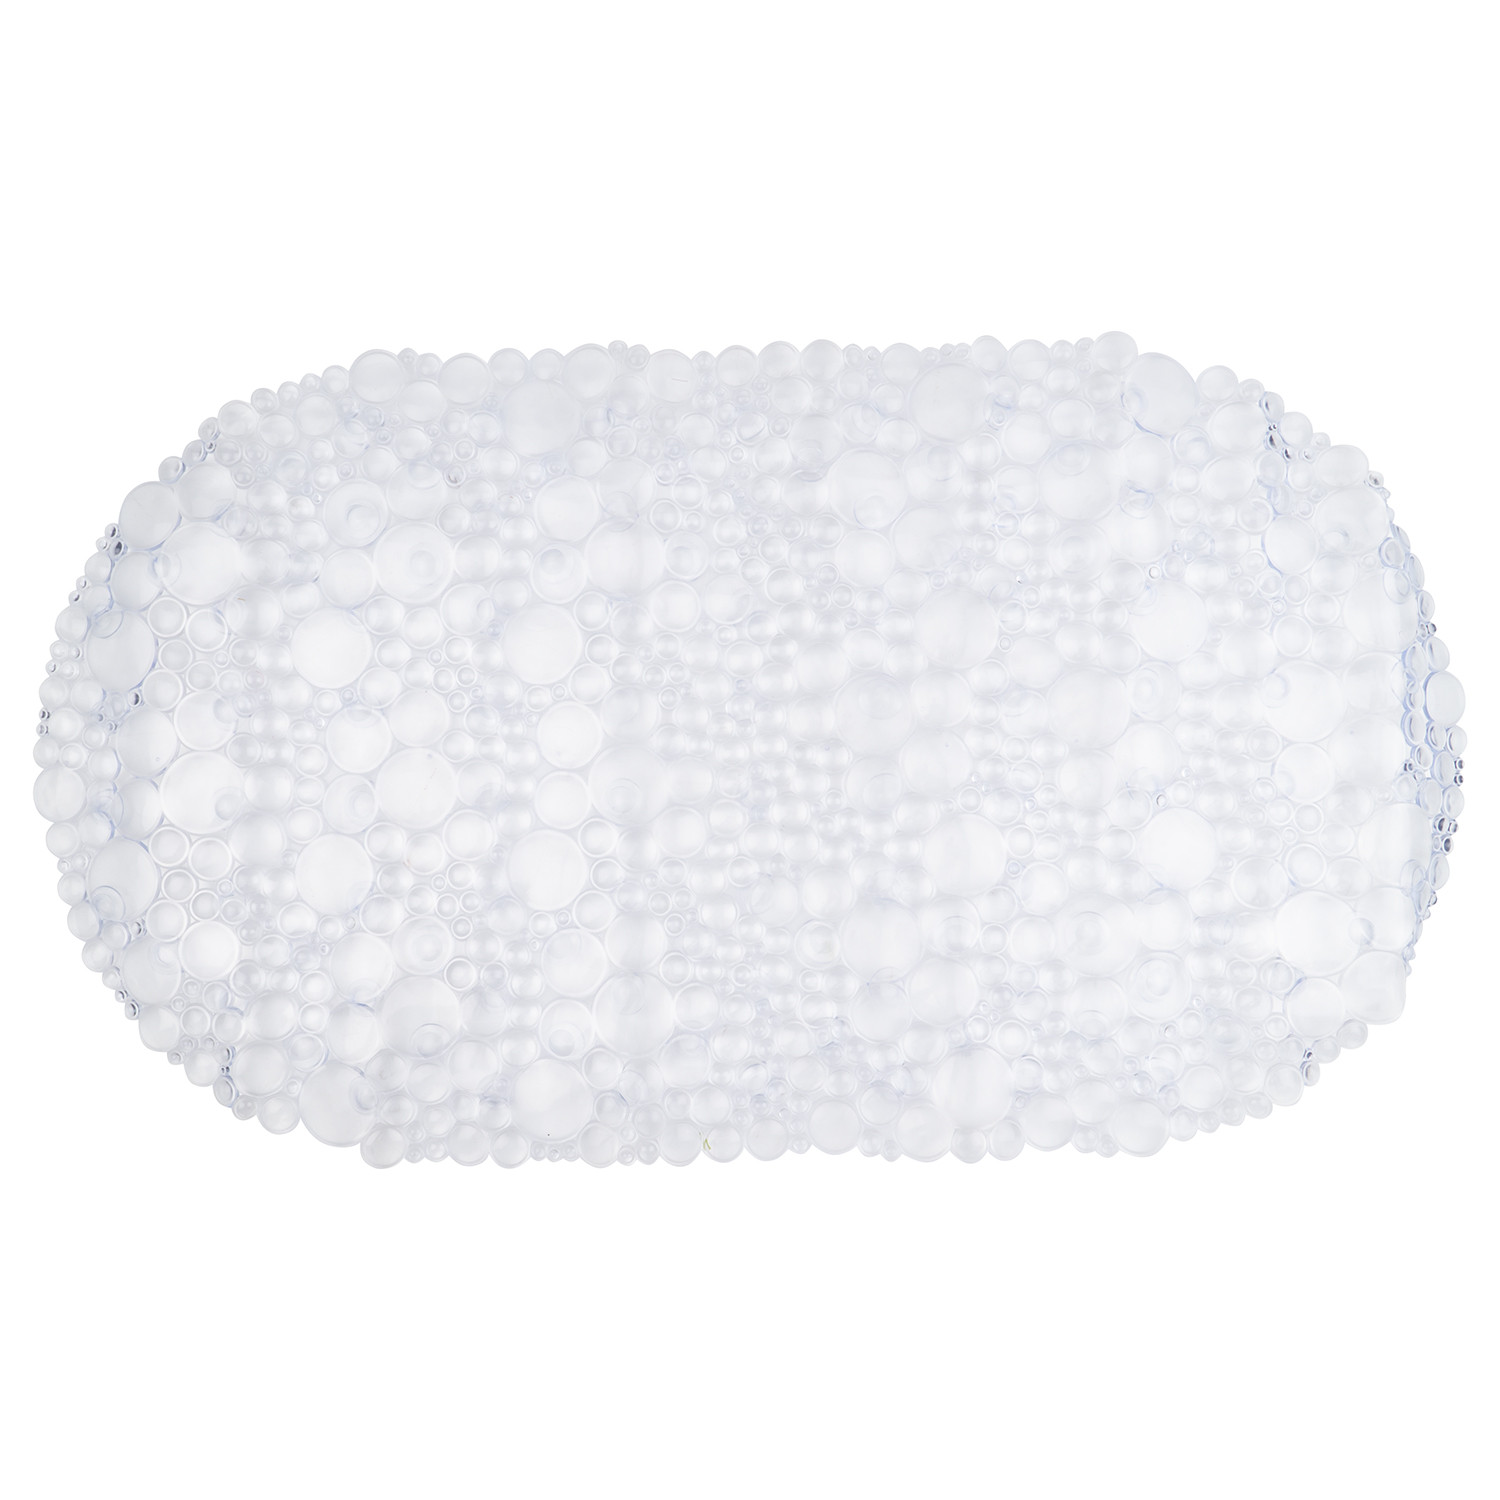 Bubbles Clear PVC Bath Mat - Round Image 1